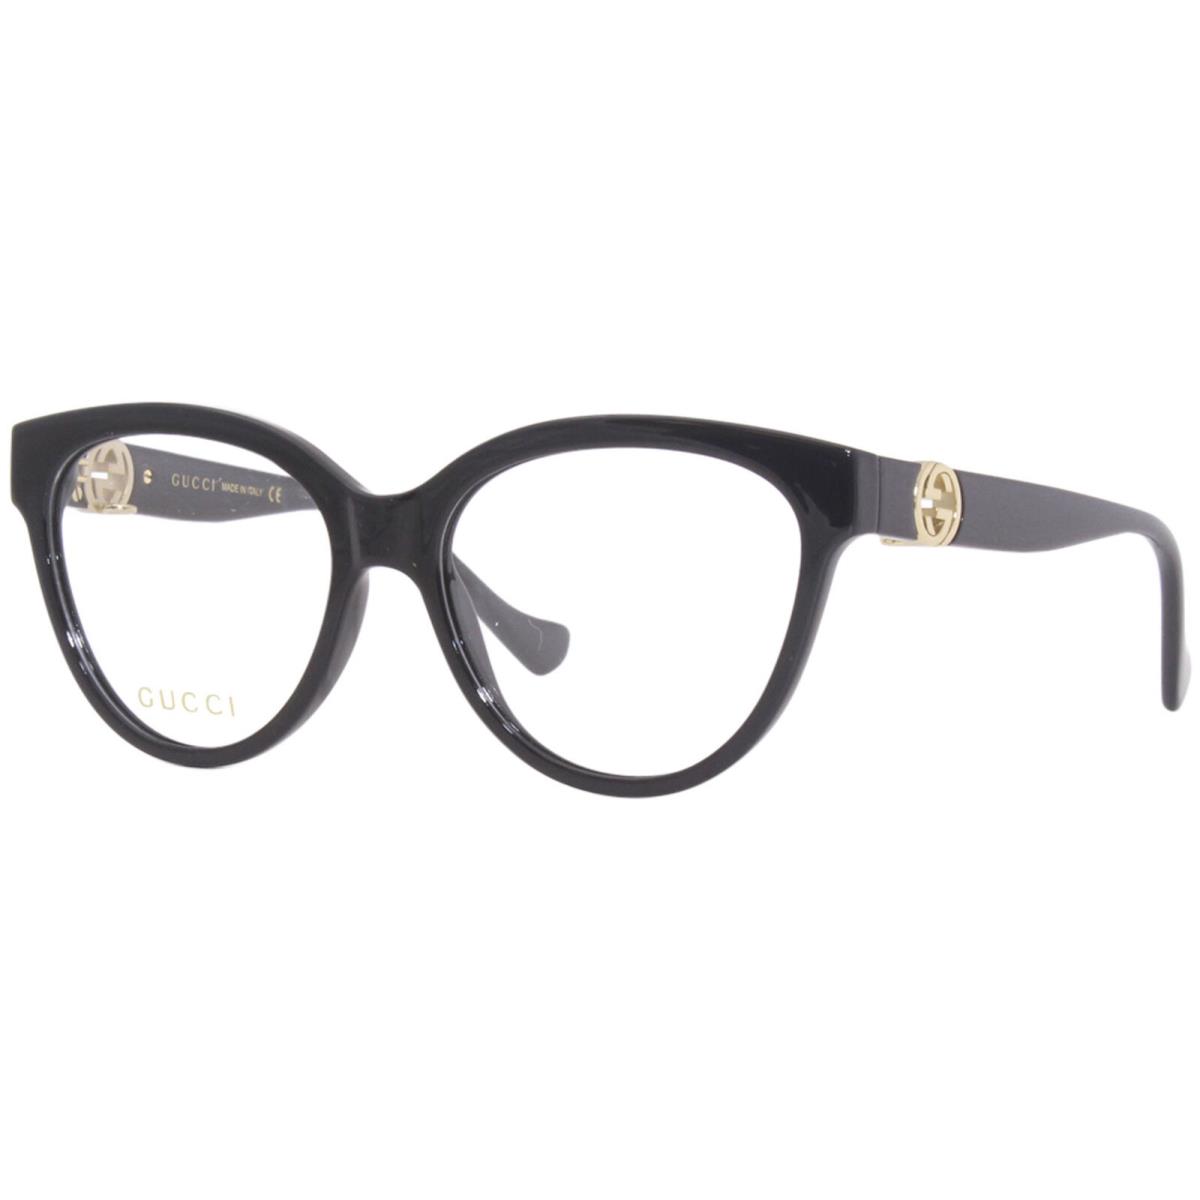 Gucci GG1024O 006 Eyeglasses Frame Black/gold Chain Full Rim Cat Eye 54mm